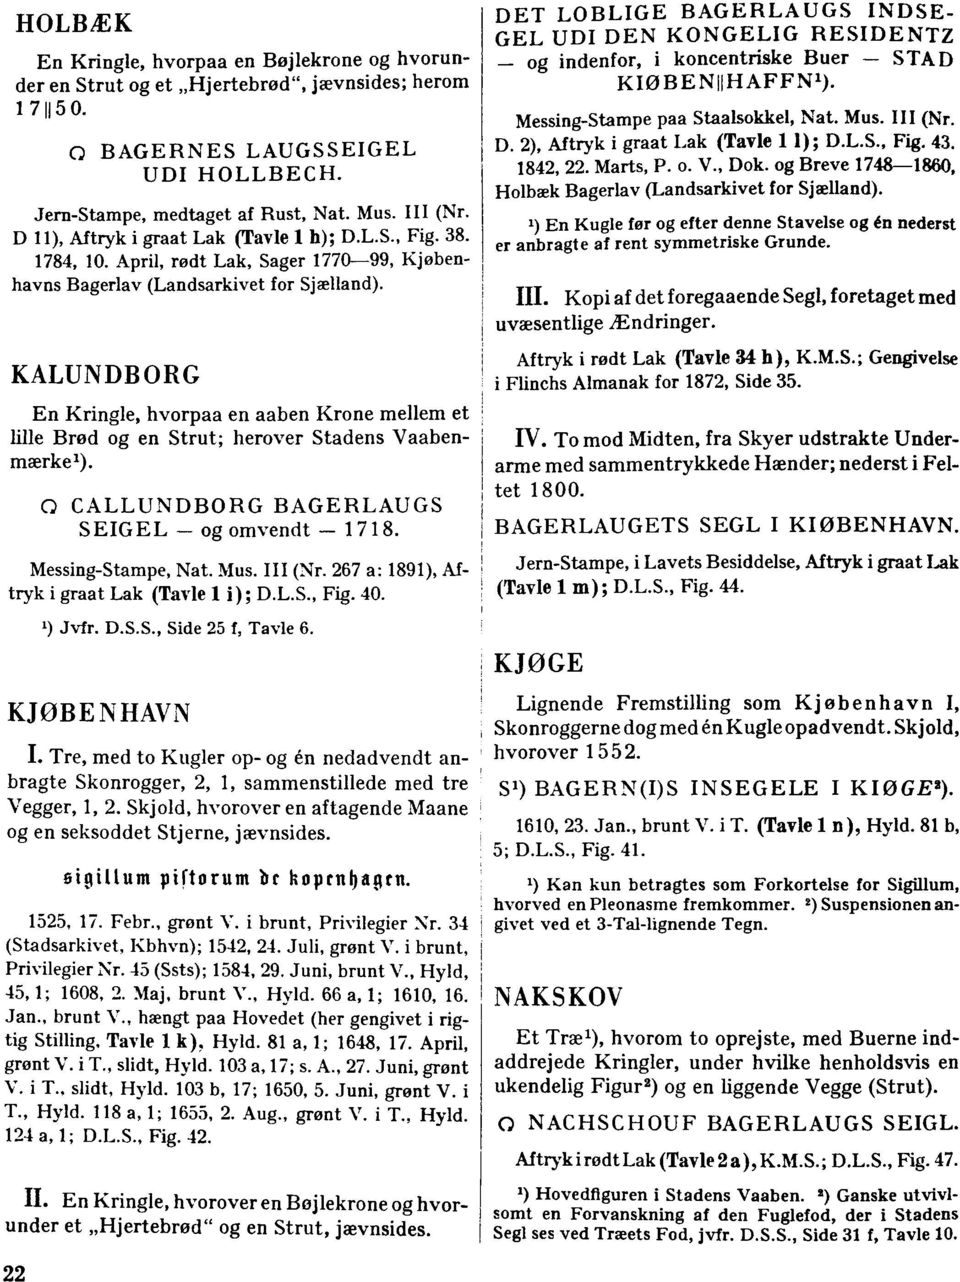 KALUNDBGRG En Kringle, hvorpaa en aaben Krone mellem et lille Brød og en Strut; herover Stadens Vaabenmærkel). CD CALLUNDBORG BAGERLAUGS SEIGEL - og omvendt - 1718. Messing-Stampe, Nat. Mus. III (Nr.